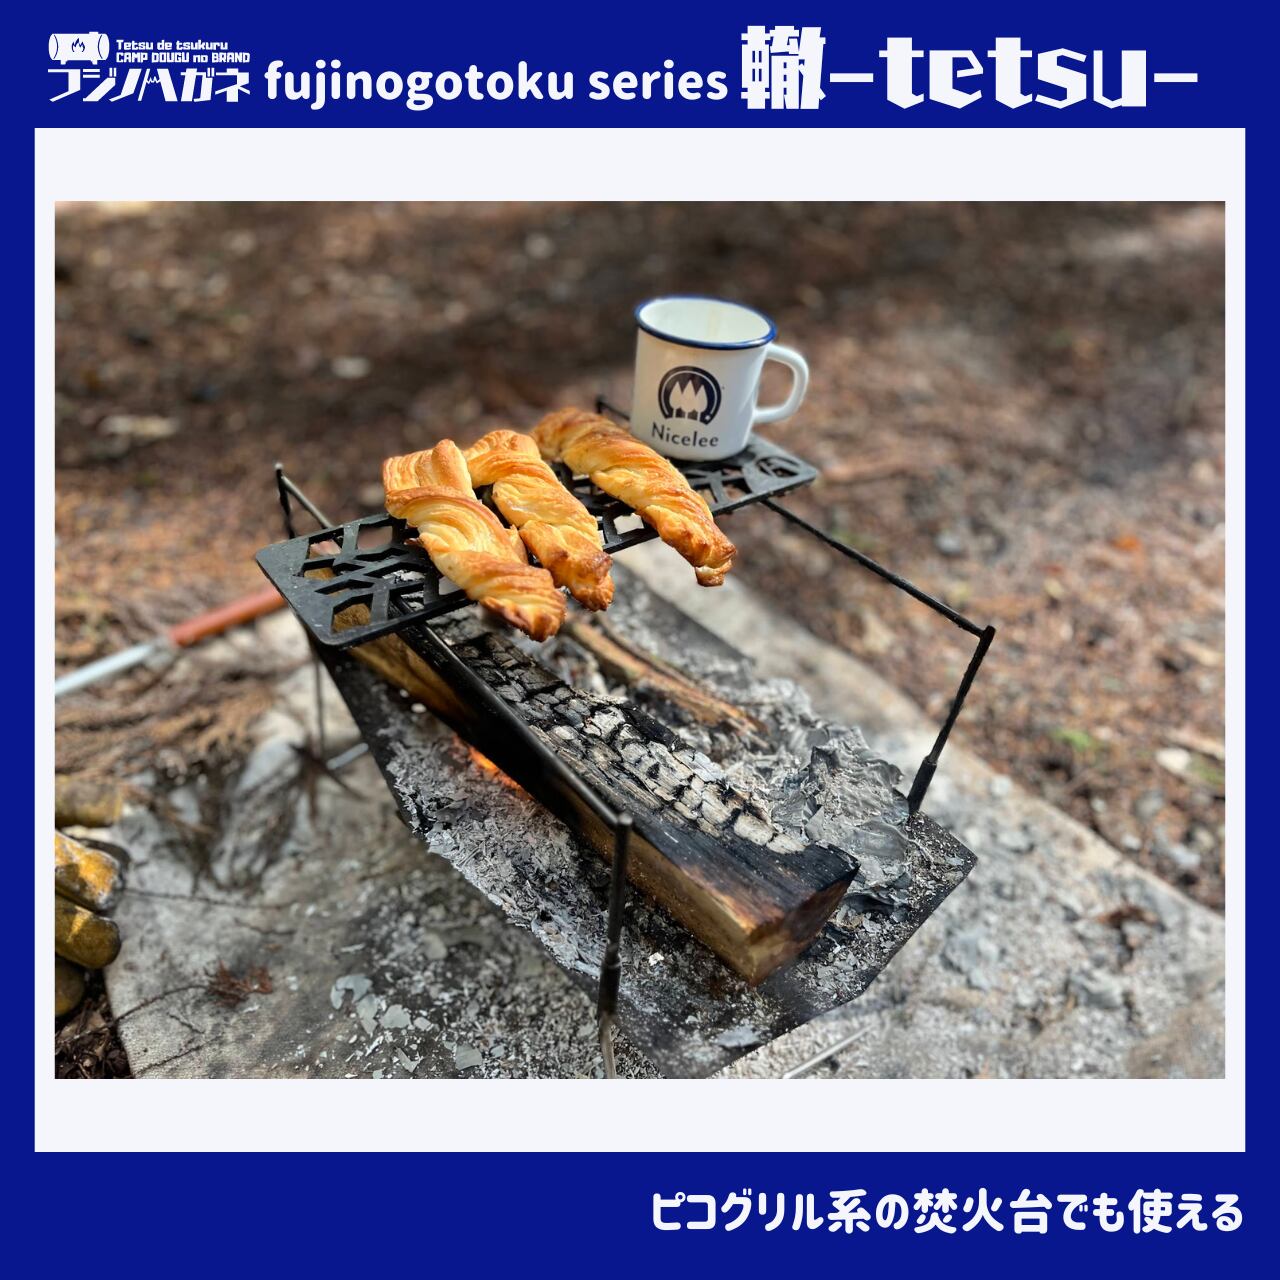 fujinogotoku series 第二弾 轍〜TETSU〜   フジノハガネ